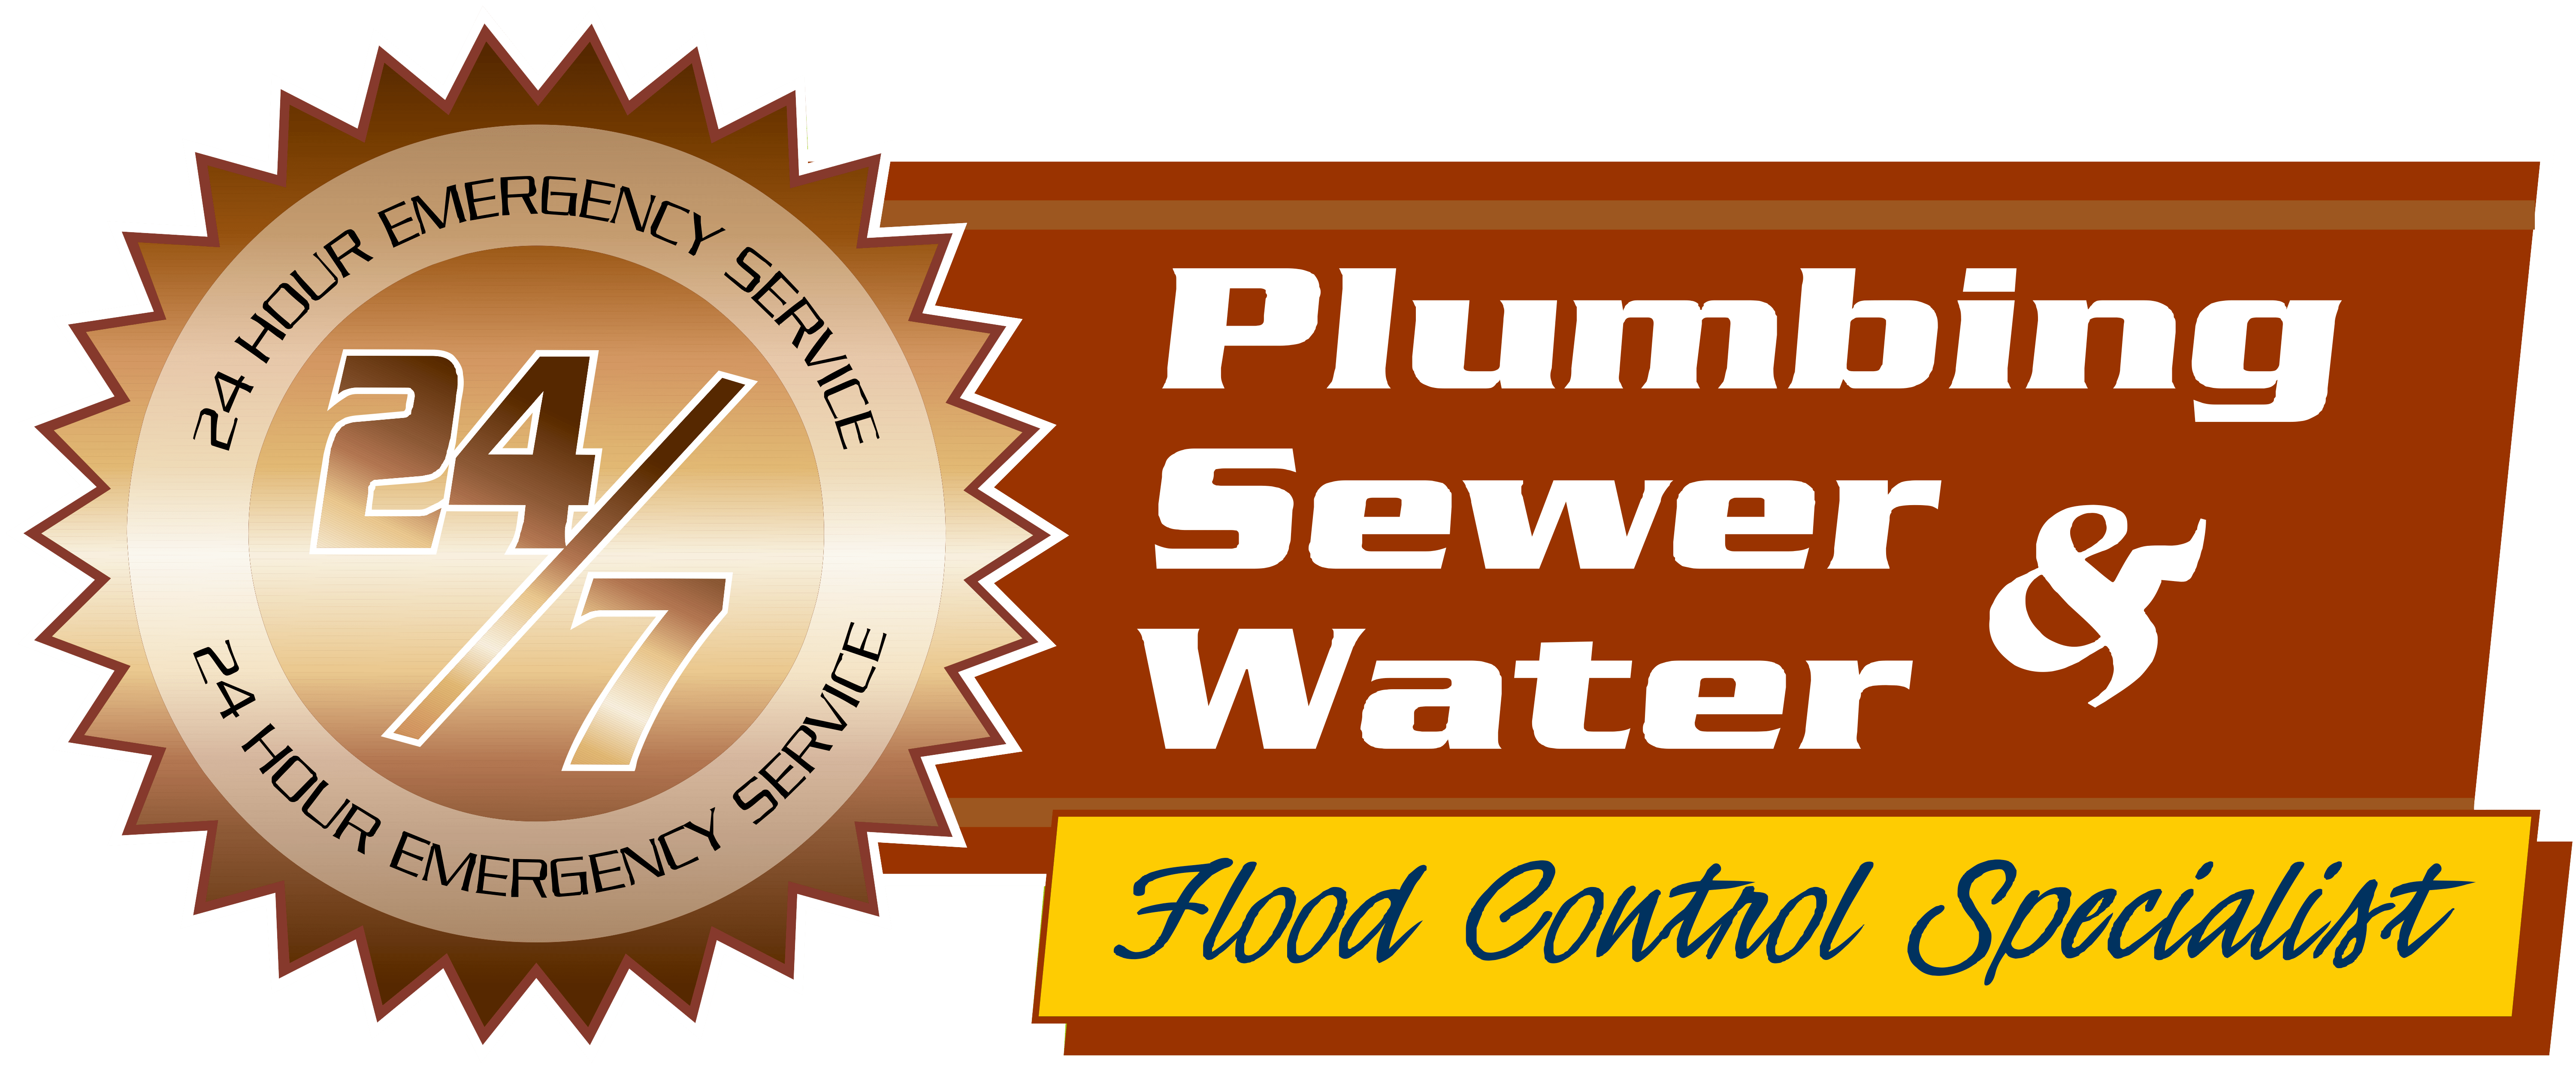 24/7 Plumbing Sewer & Water Glen Ellyn IL